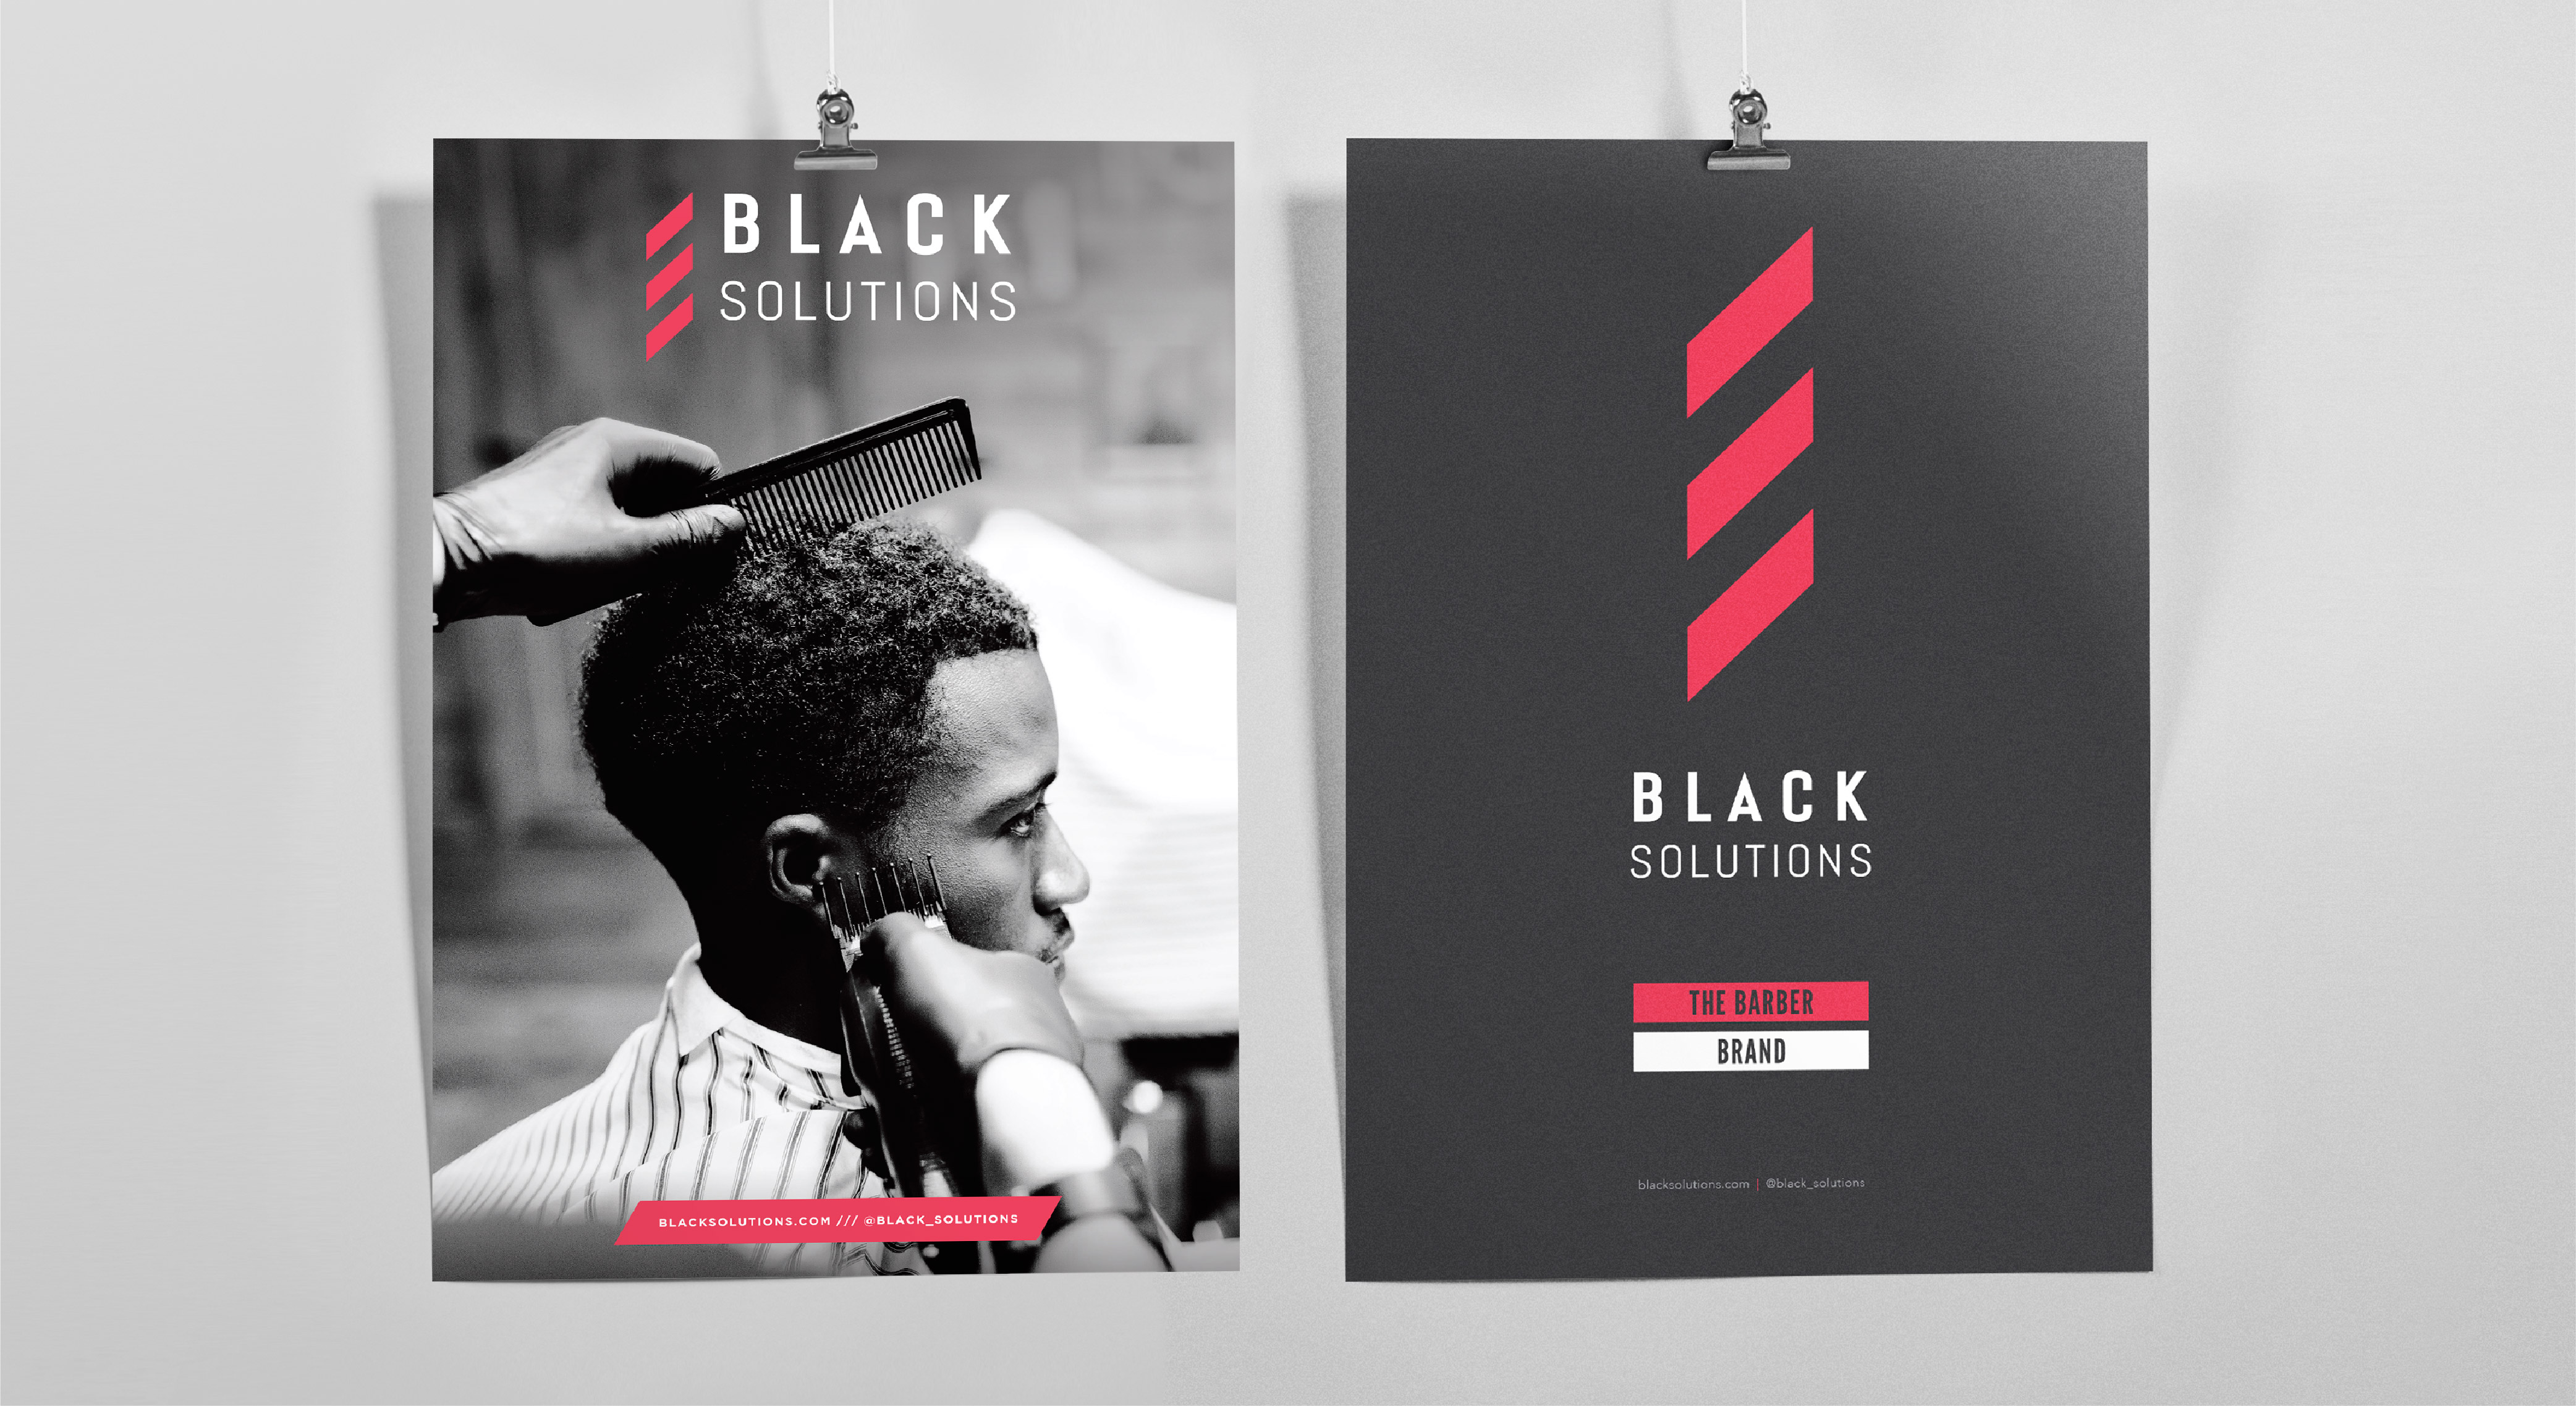 Black Solutions branded poster design